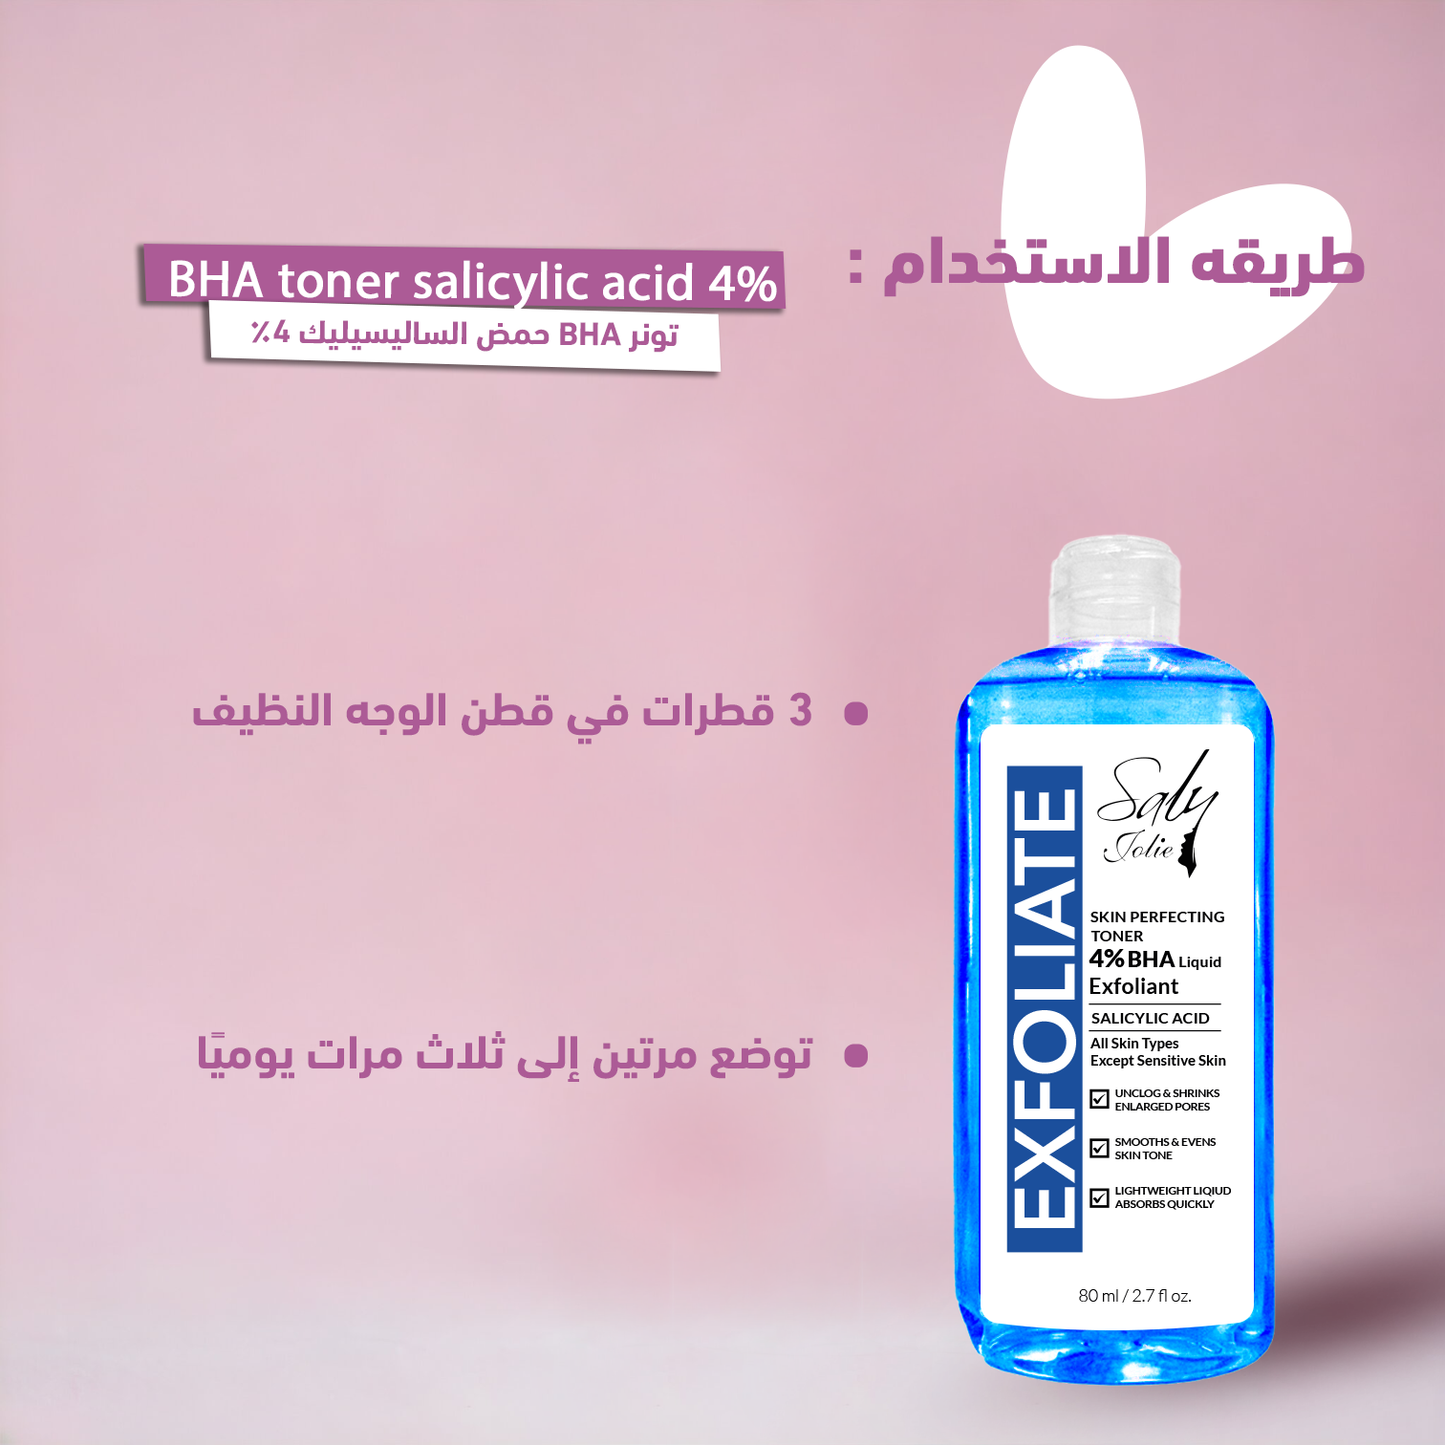 BHA  toner salicylic acid 4%